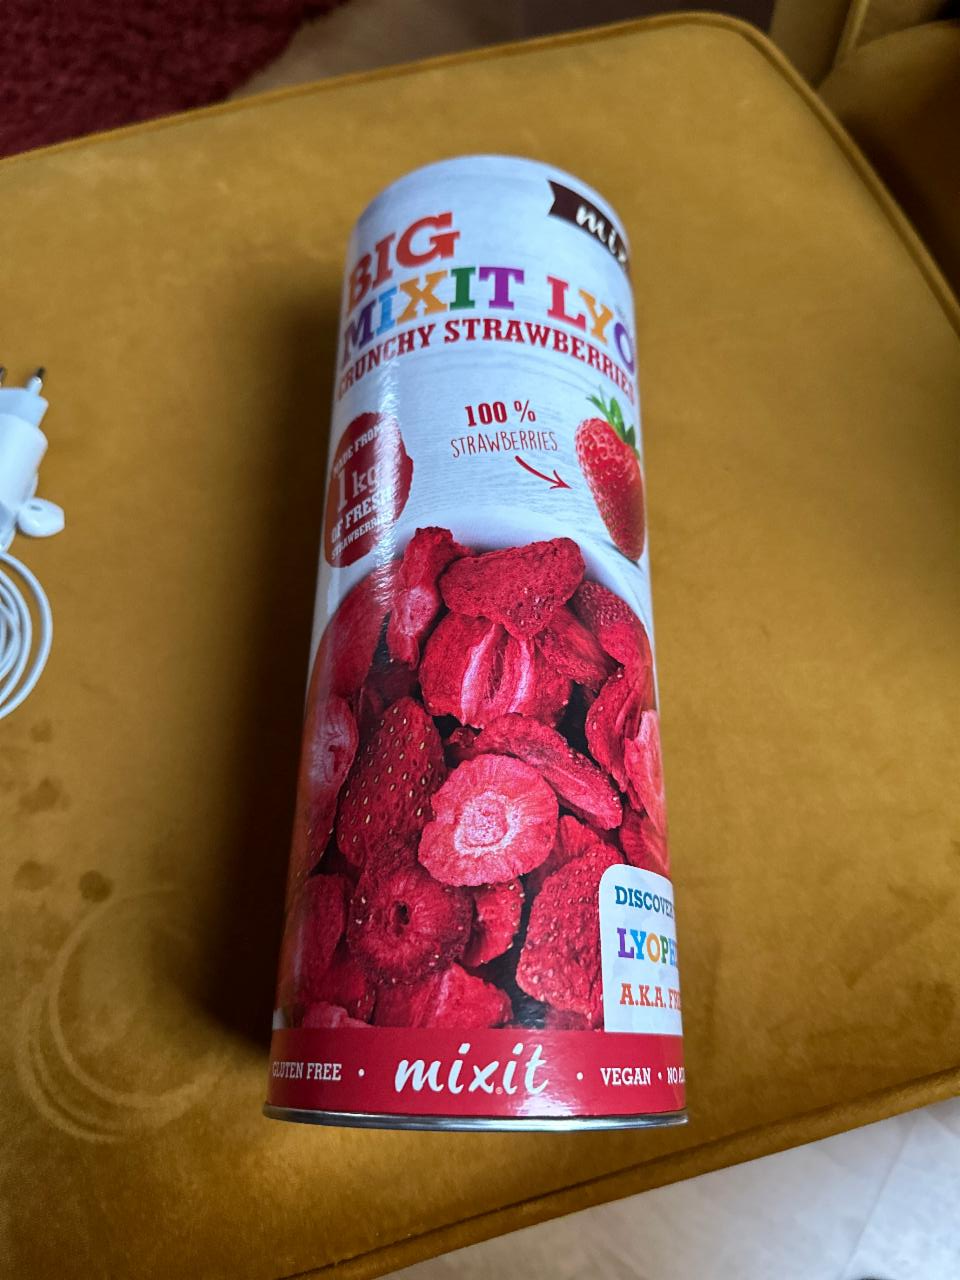 Képek - Big mixit lyo Crunchy strawberry Mixit